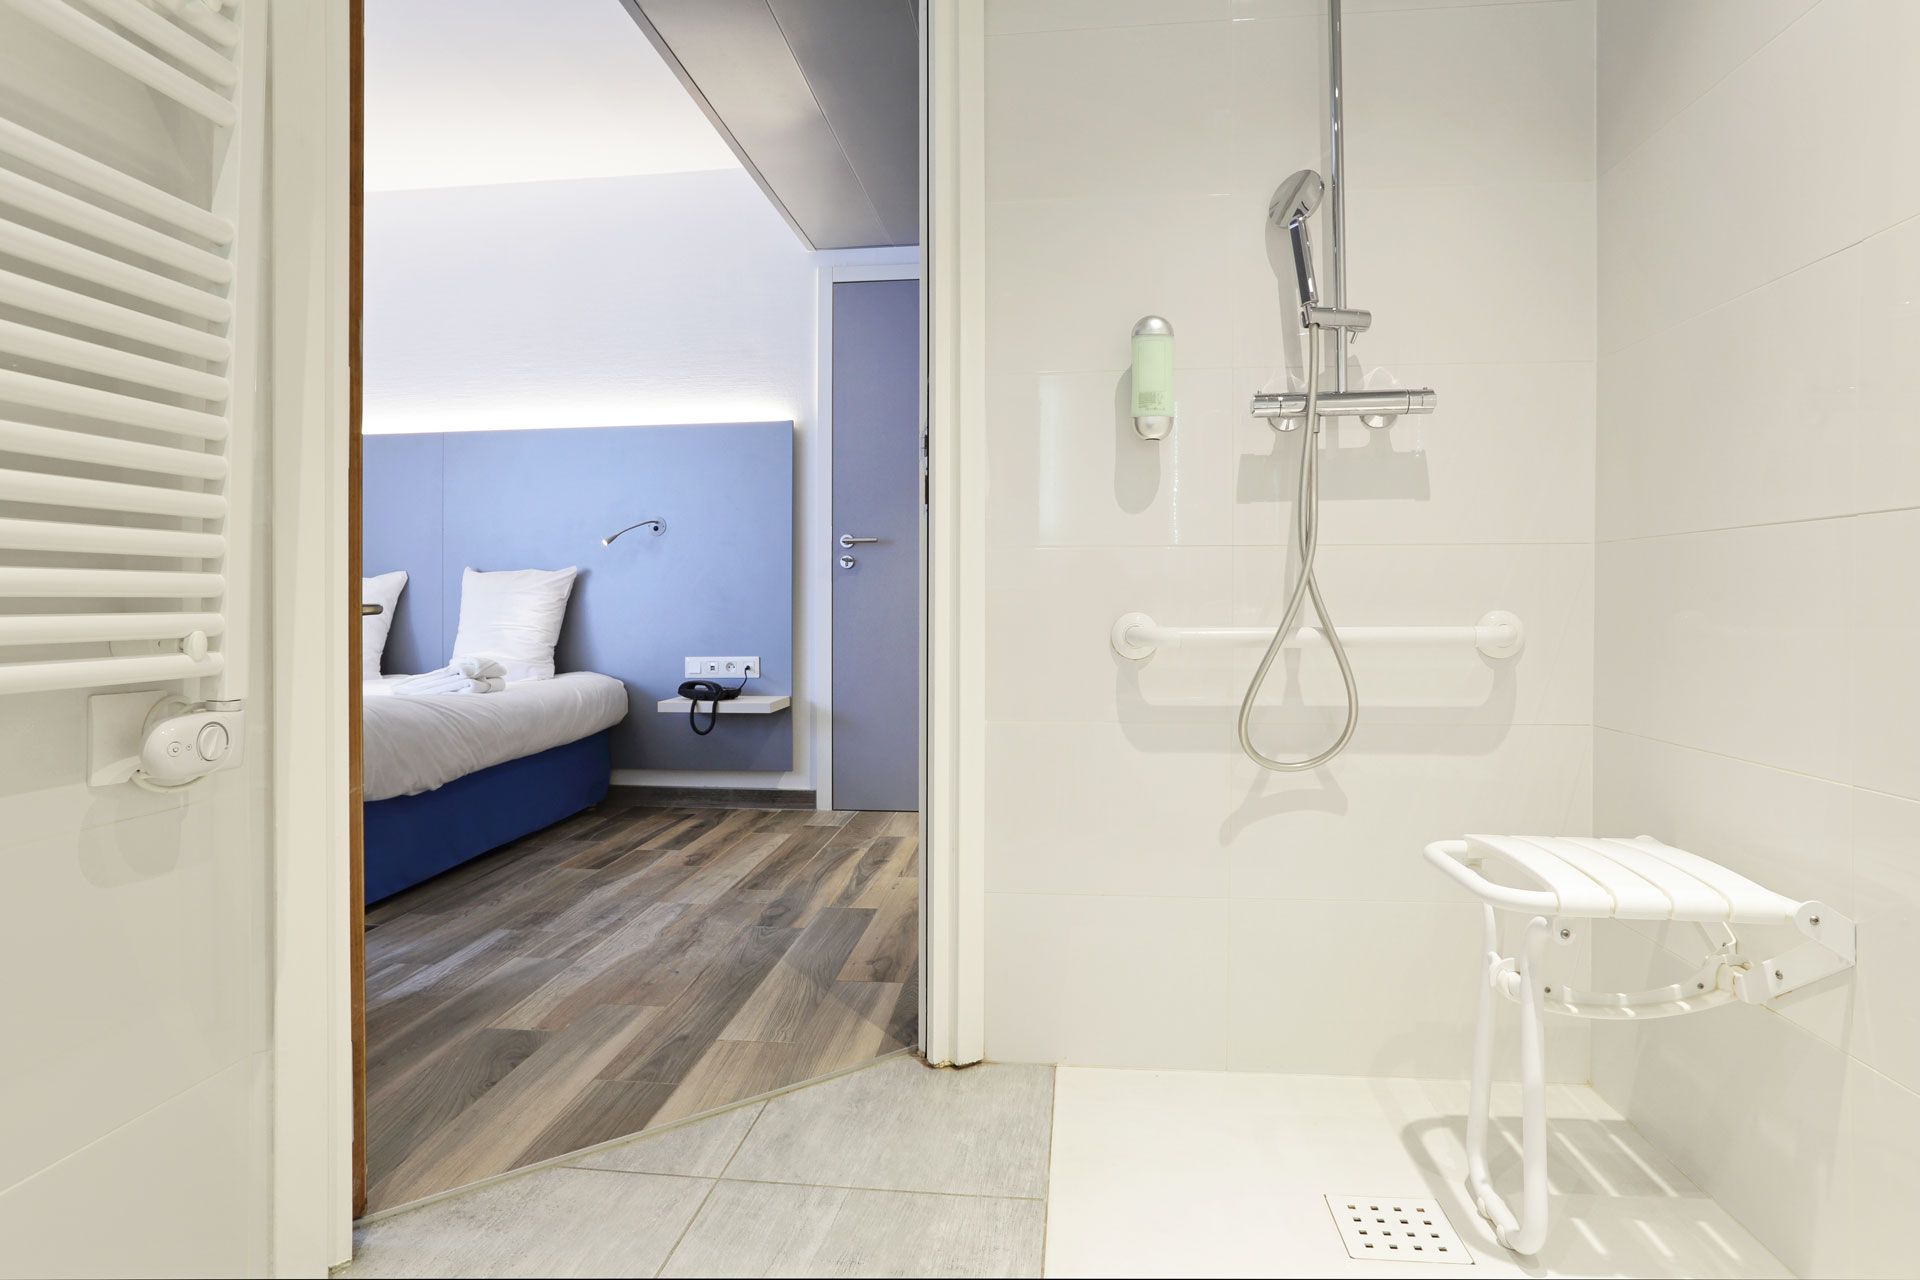 Une salle de bain ouverte sur une chambre aménagés pour les personnes à mobilité réduite